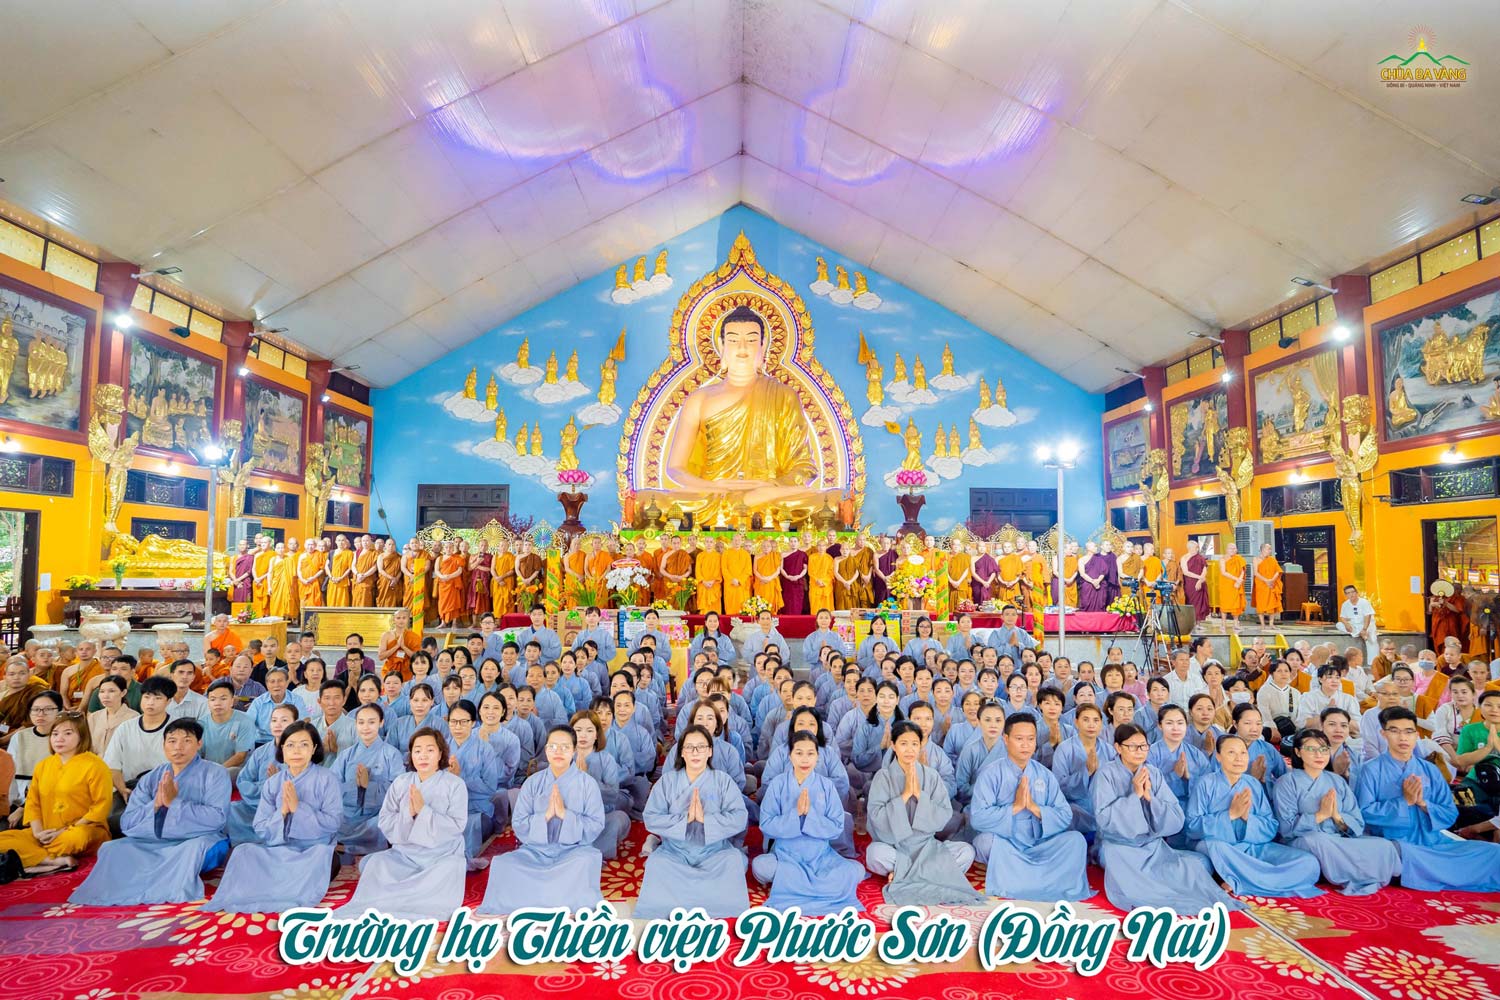 Chư Tôn đức Tăng chụp hình lưu niệm cùng các Phật tử tại trường hạ Thiền viện Phước Sơn